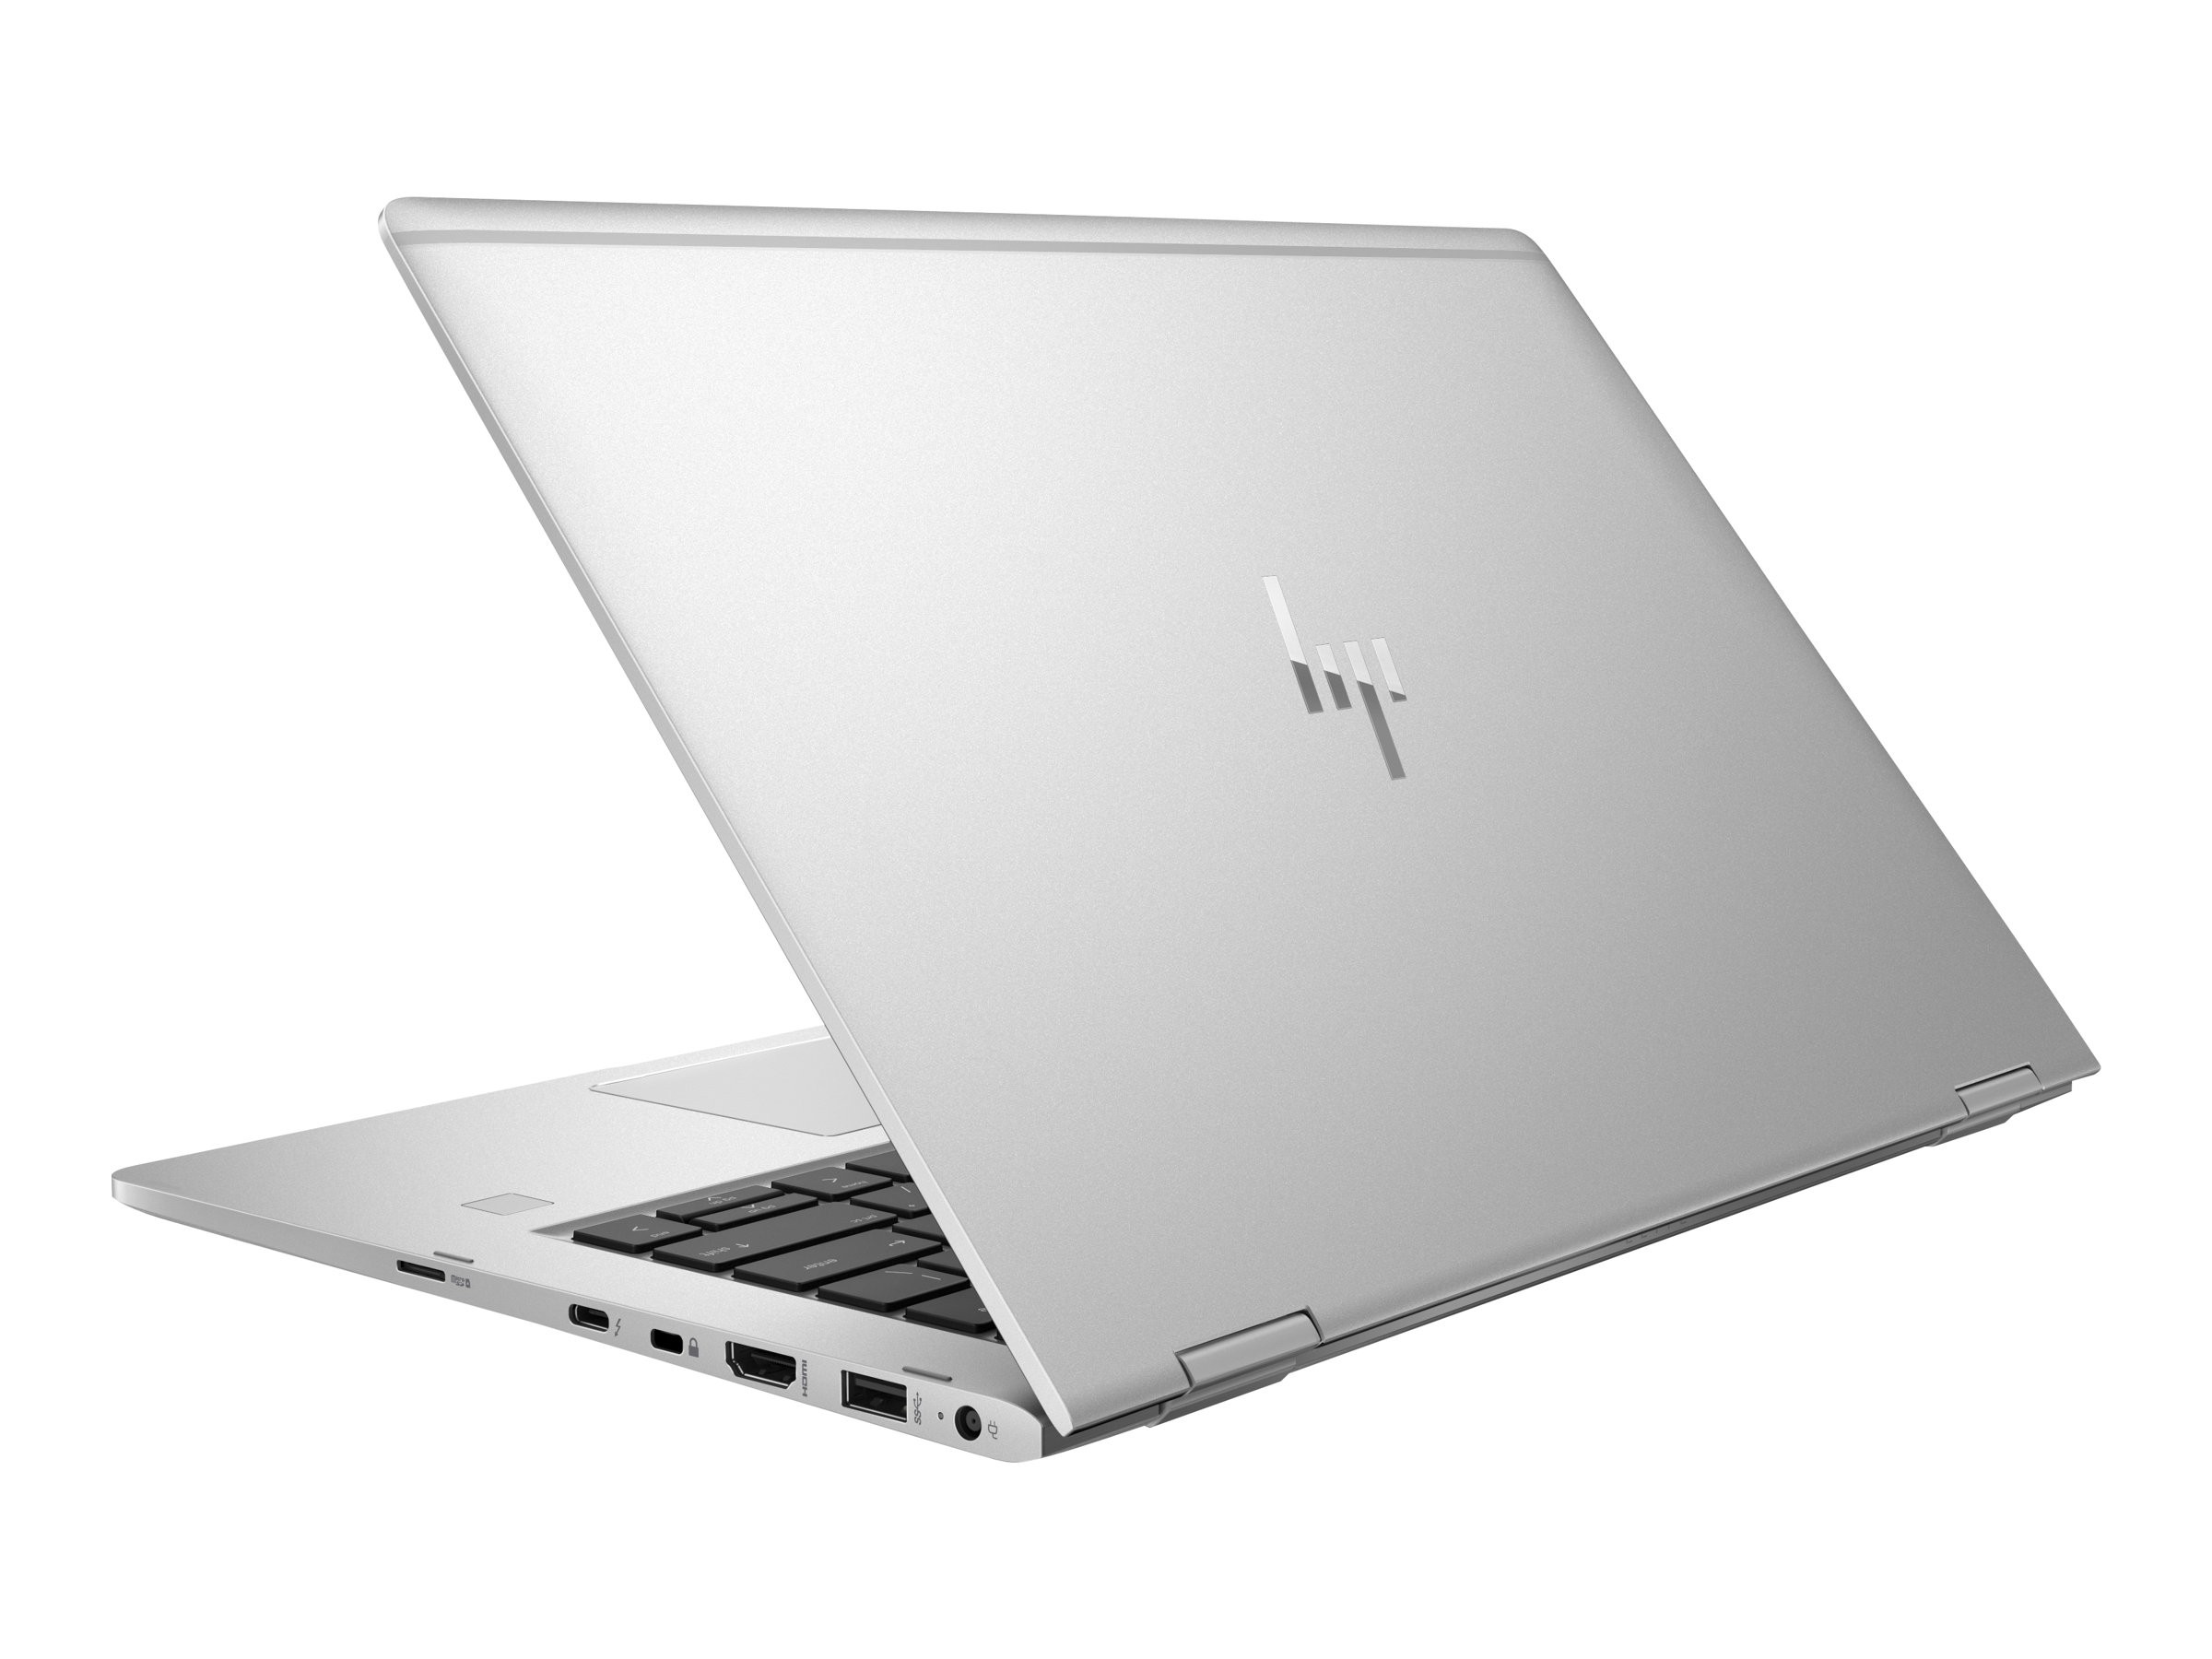 i7 HP EliteBook x360 1030 G2 13.3 Touchscreen 2-in-1 Laptop 8GB RAM Renewed 256GB SSD Win10 Pro 